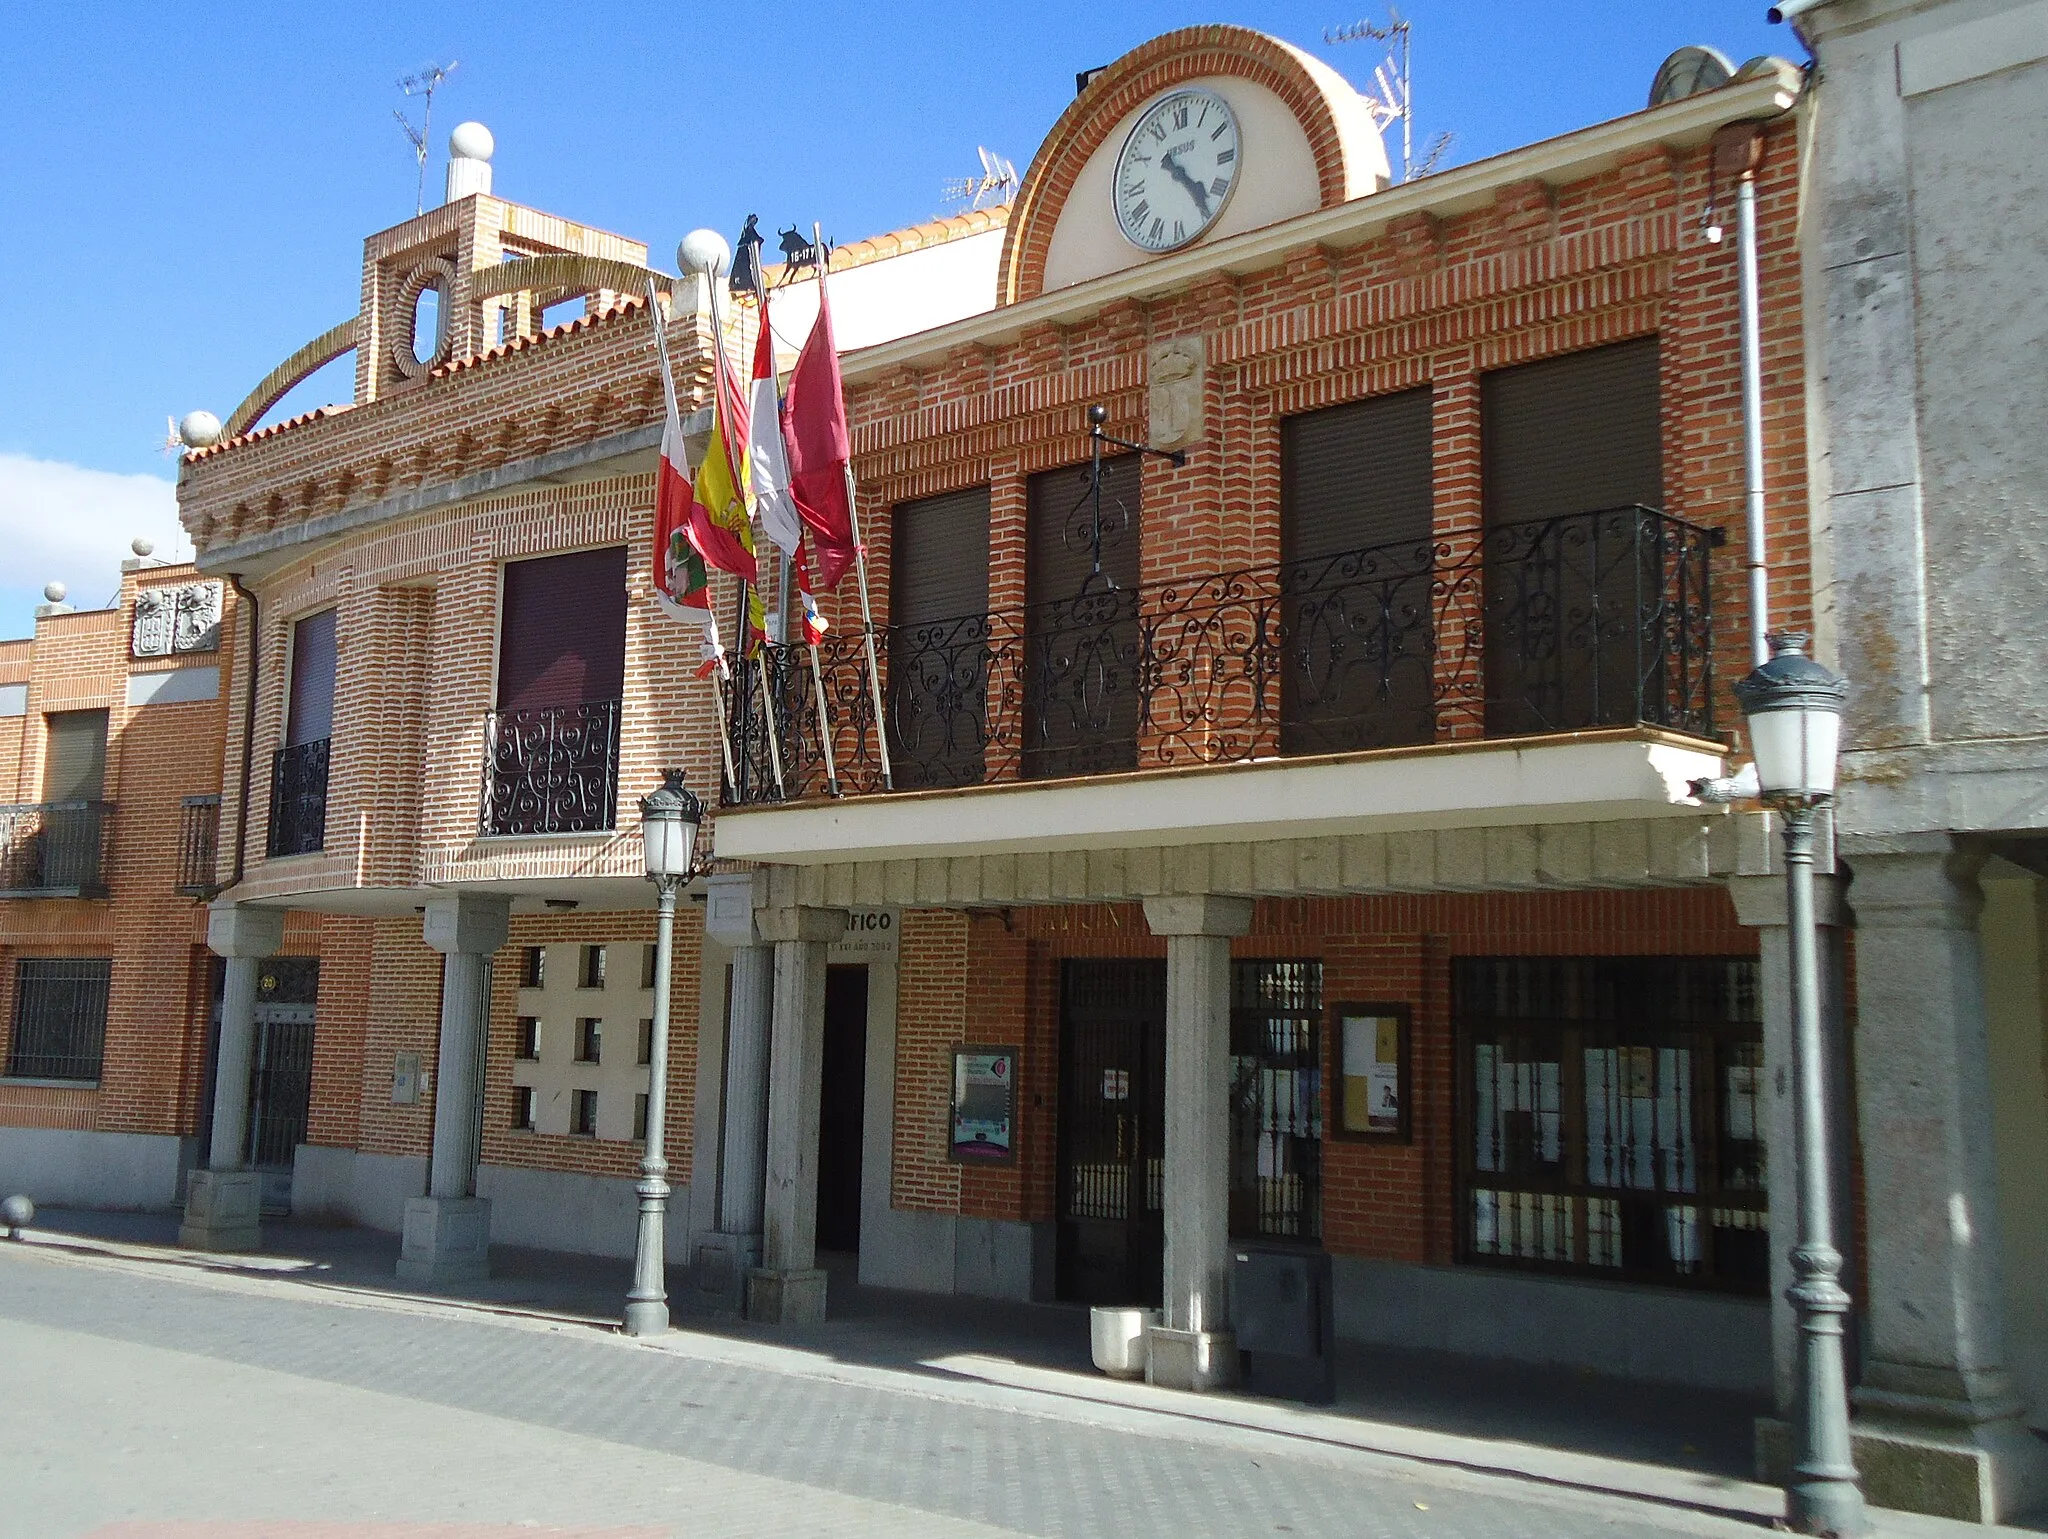 Image of Castilla y León